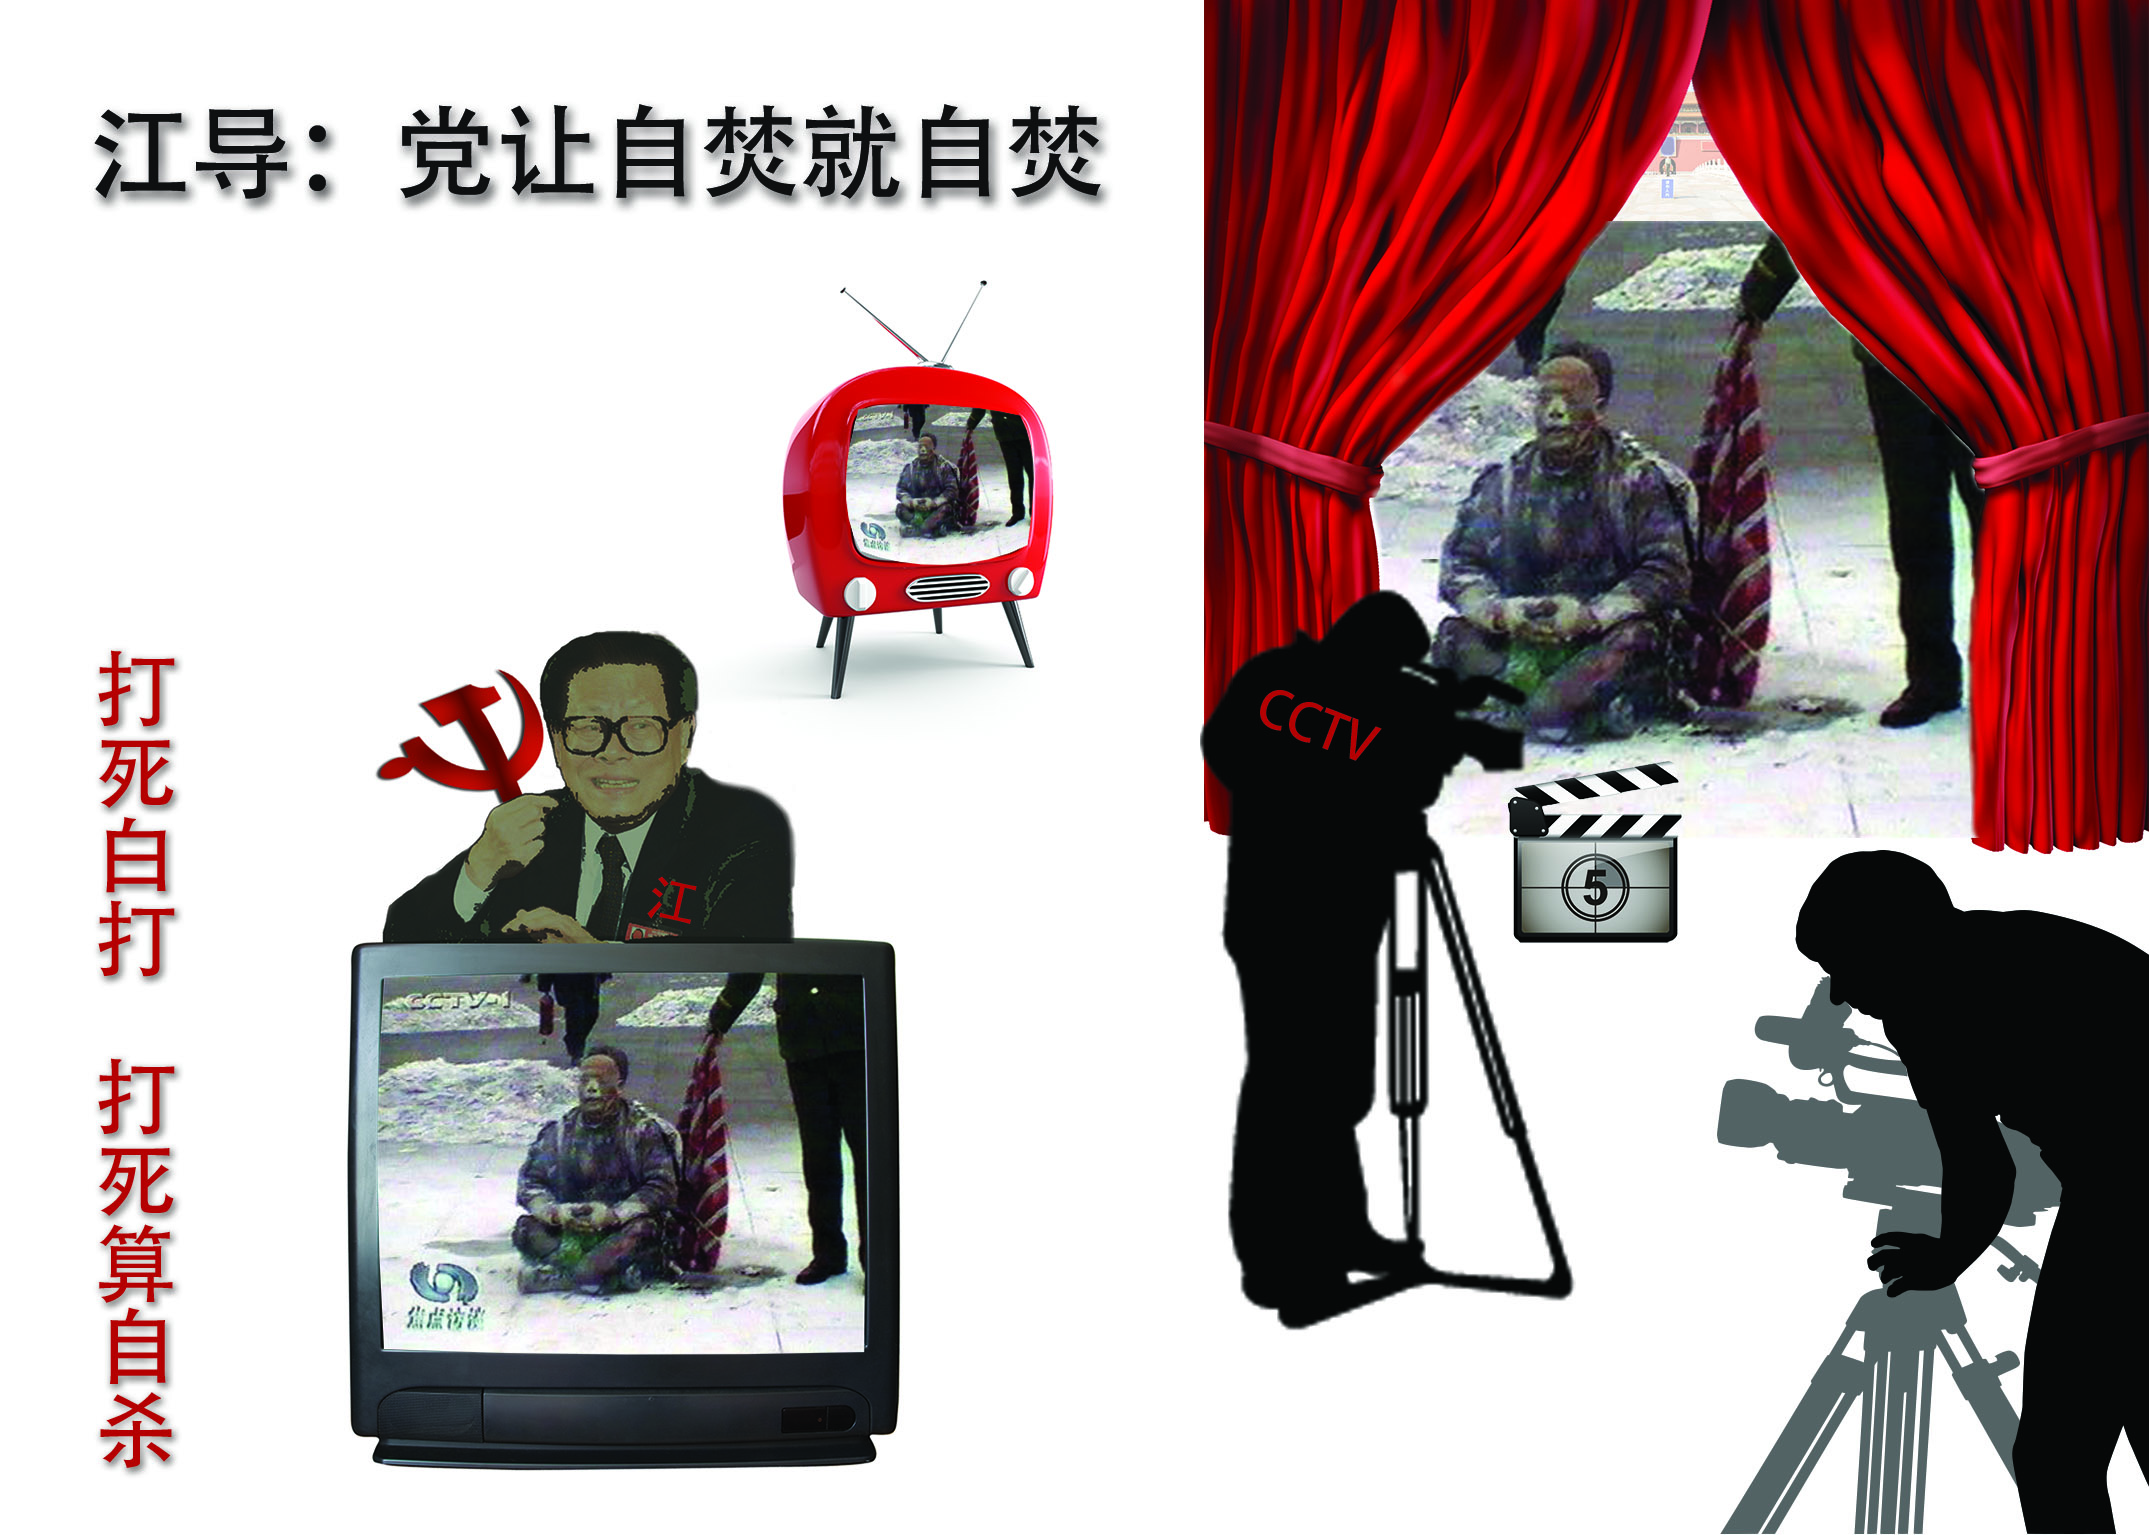 Image for article Les journalistes de CCTV doivent avoir été informés au préalable de la mise en scène des auto-immolations